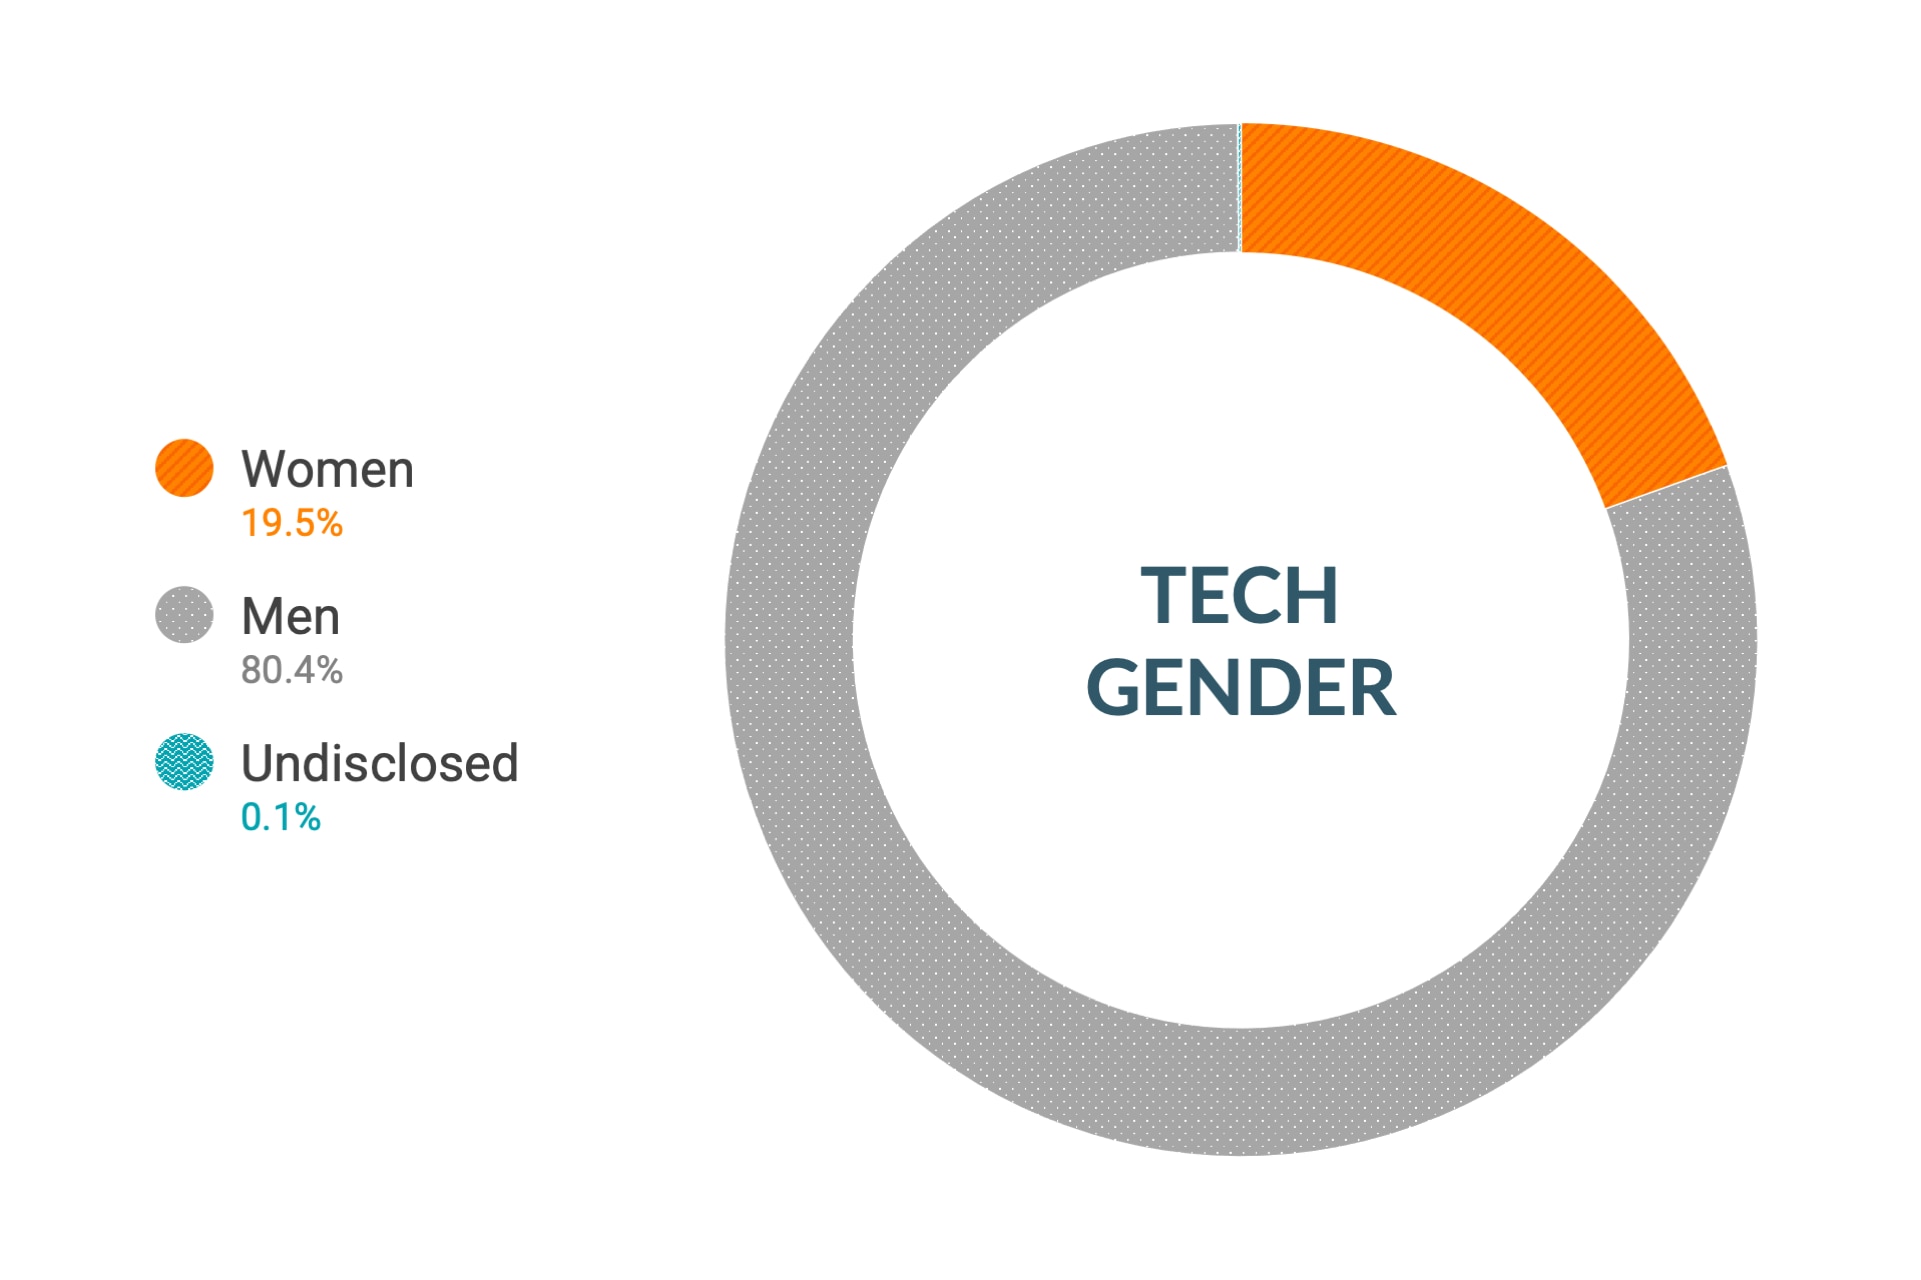 Dati Cloudera a livello globale su diversità e inclusione di genere nei ruoli tecnici e ingegneristici: donne 16%, uomini 83,9%, non dichiarato 0,1%